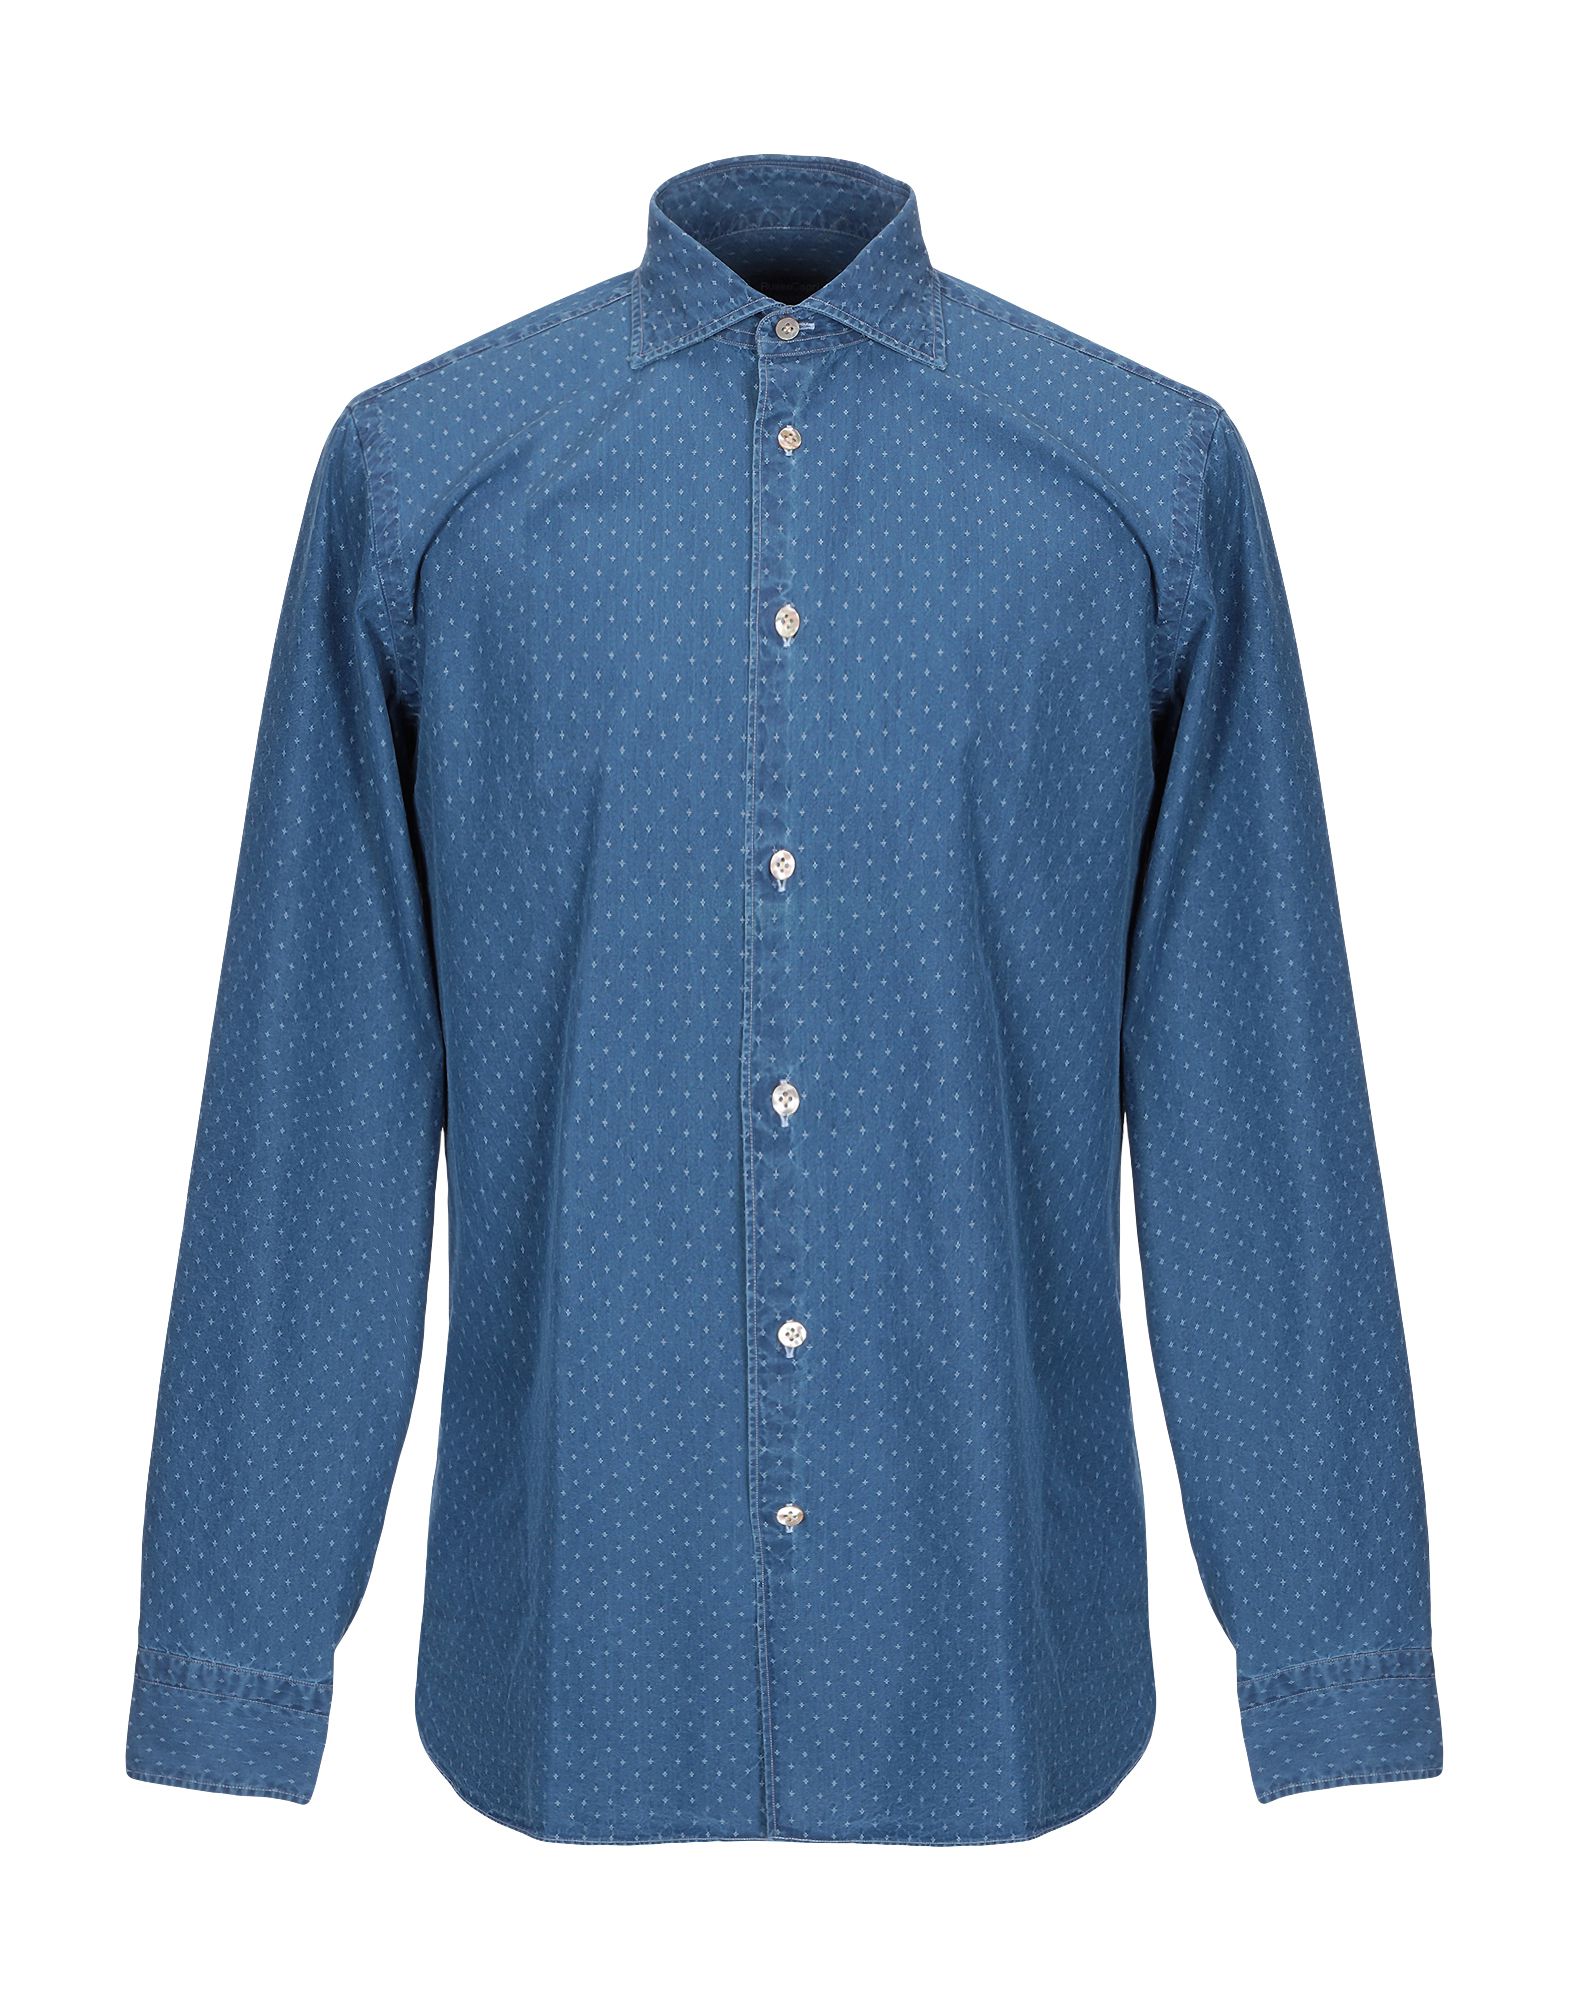 《送料無料》BORRIELLO NAPOLI メンズ デニムシャツ ブルー 41 コットン 100%